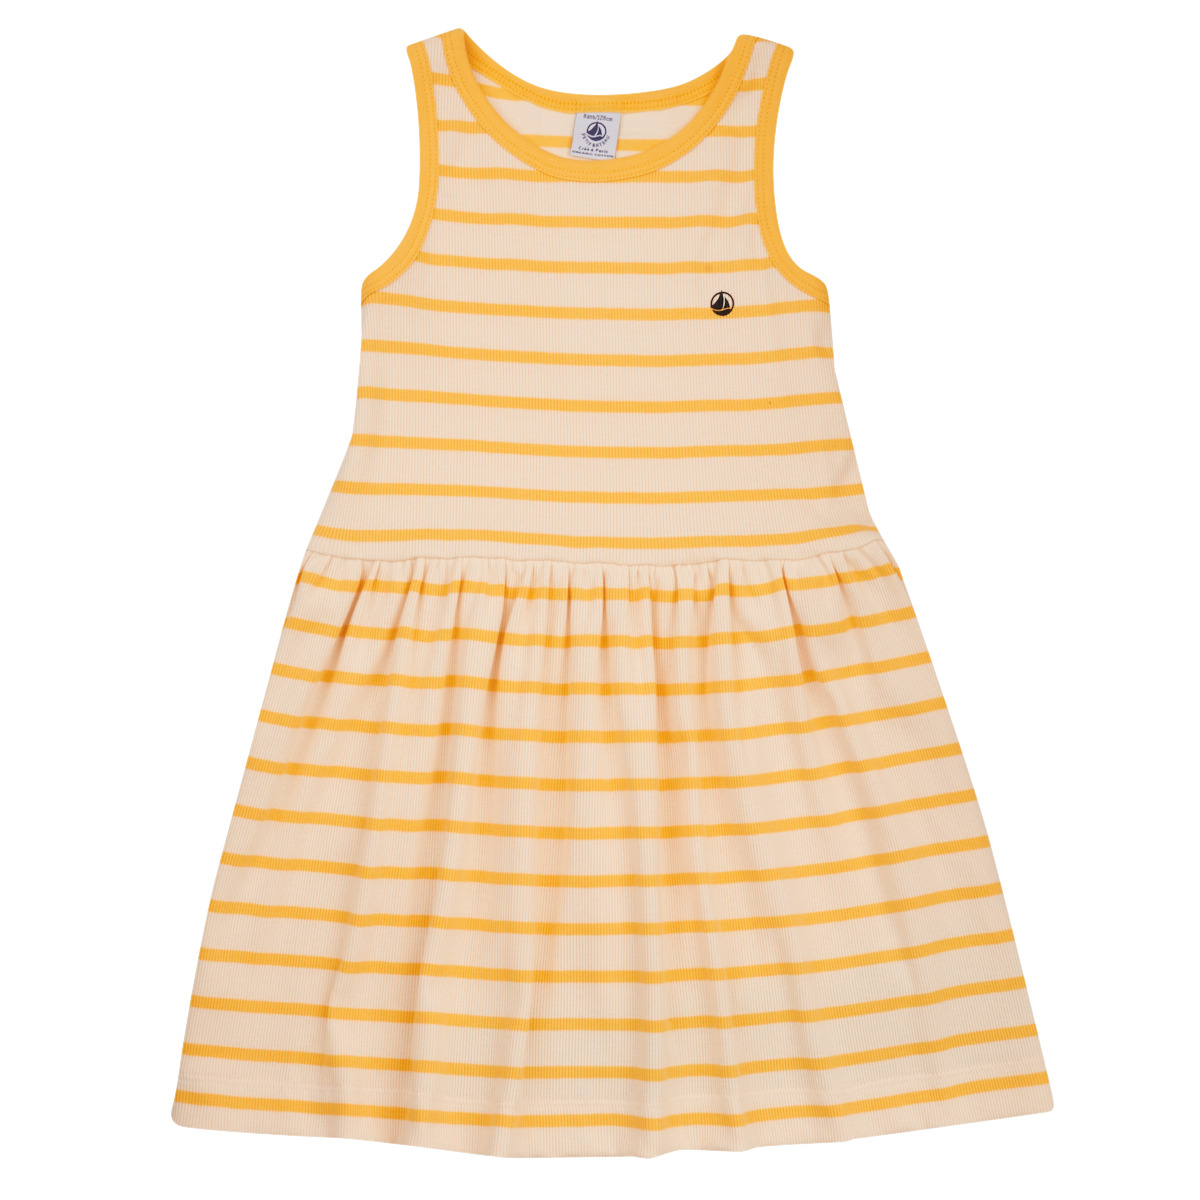 Textil Dívčí Krátké šaty Petit Bateau FLAVY Bílá / Žlutá